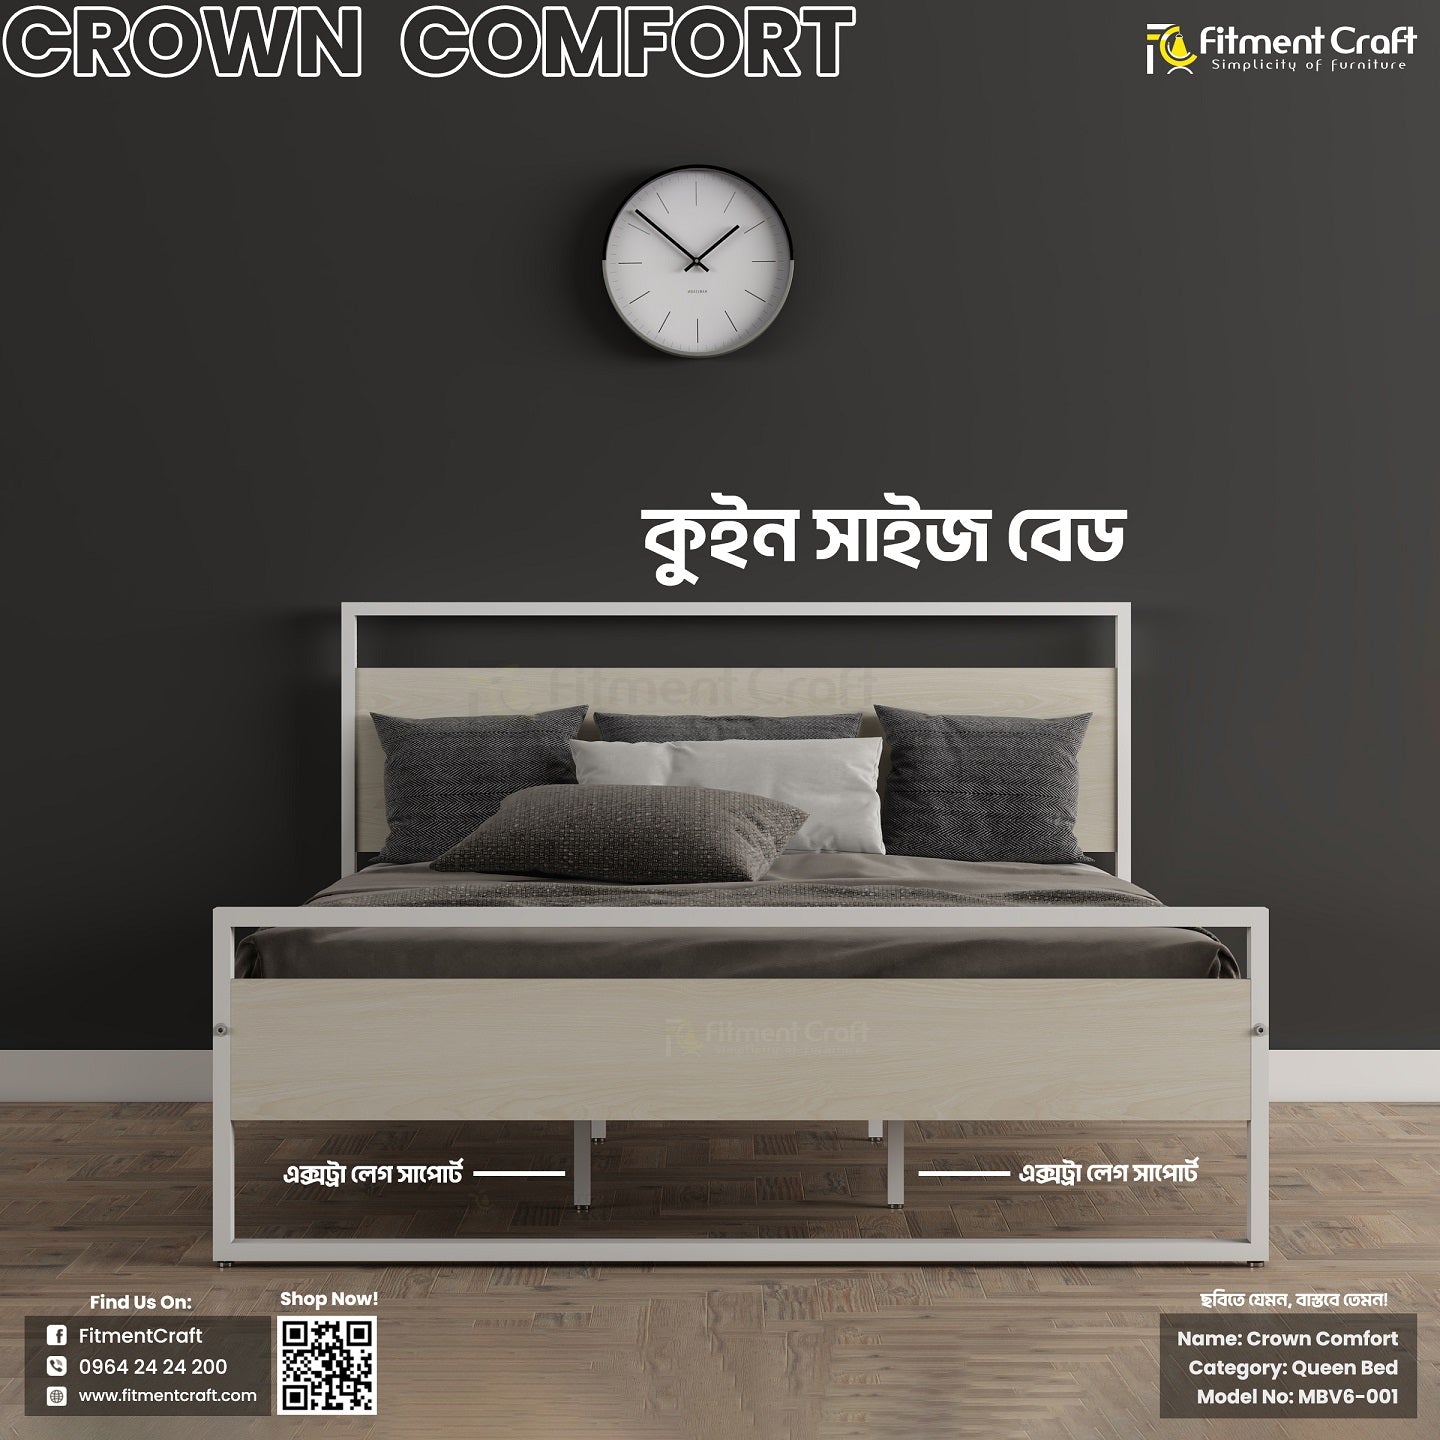 Crown Comfort - Queen Size Bed | MBV6-001